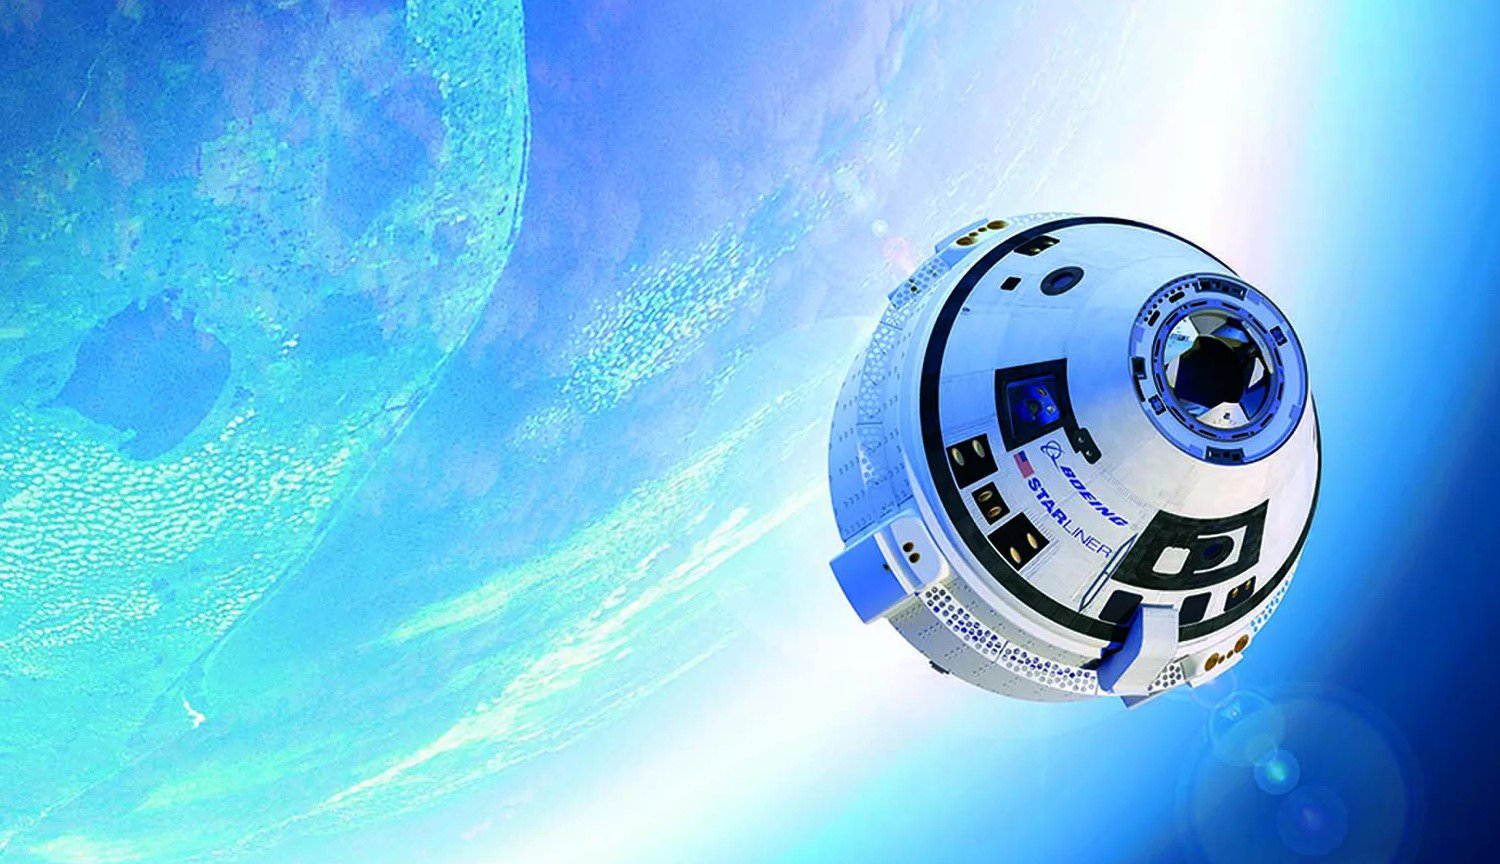 «Taksi» Boeing sunmak için astronotlar ISS hazır test